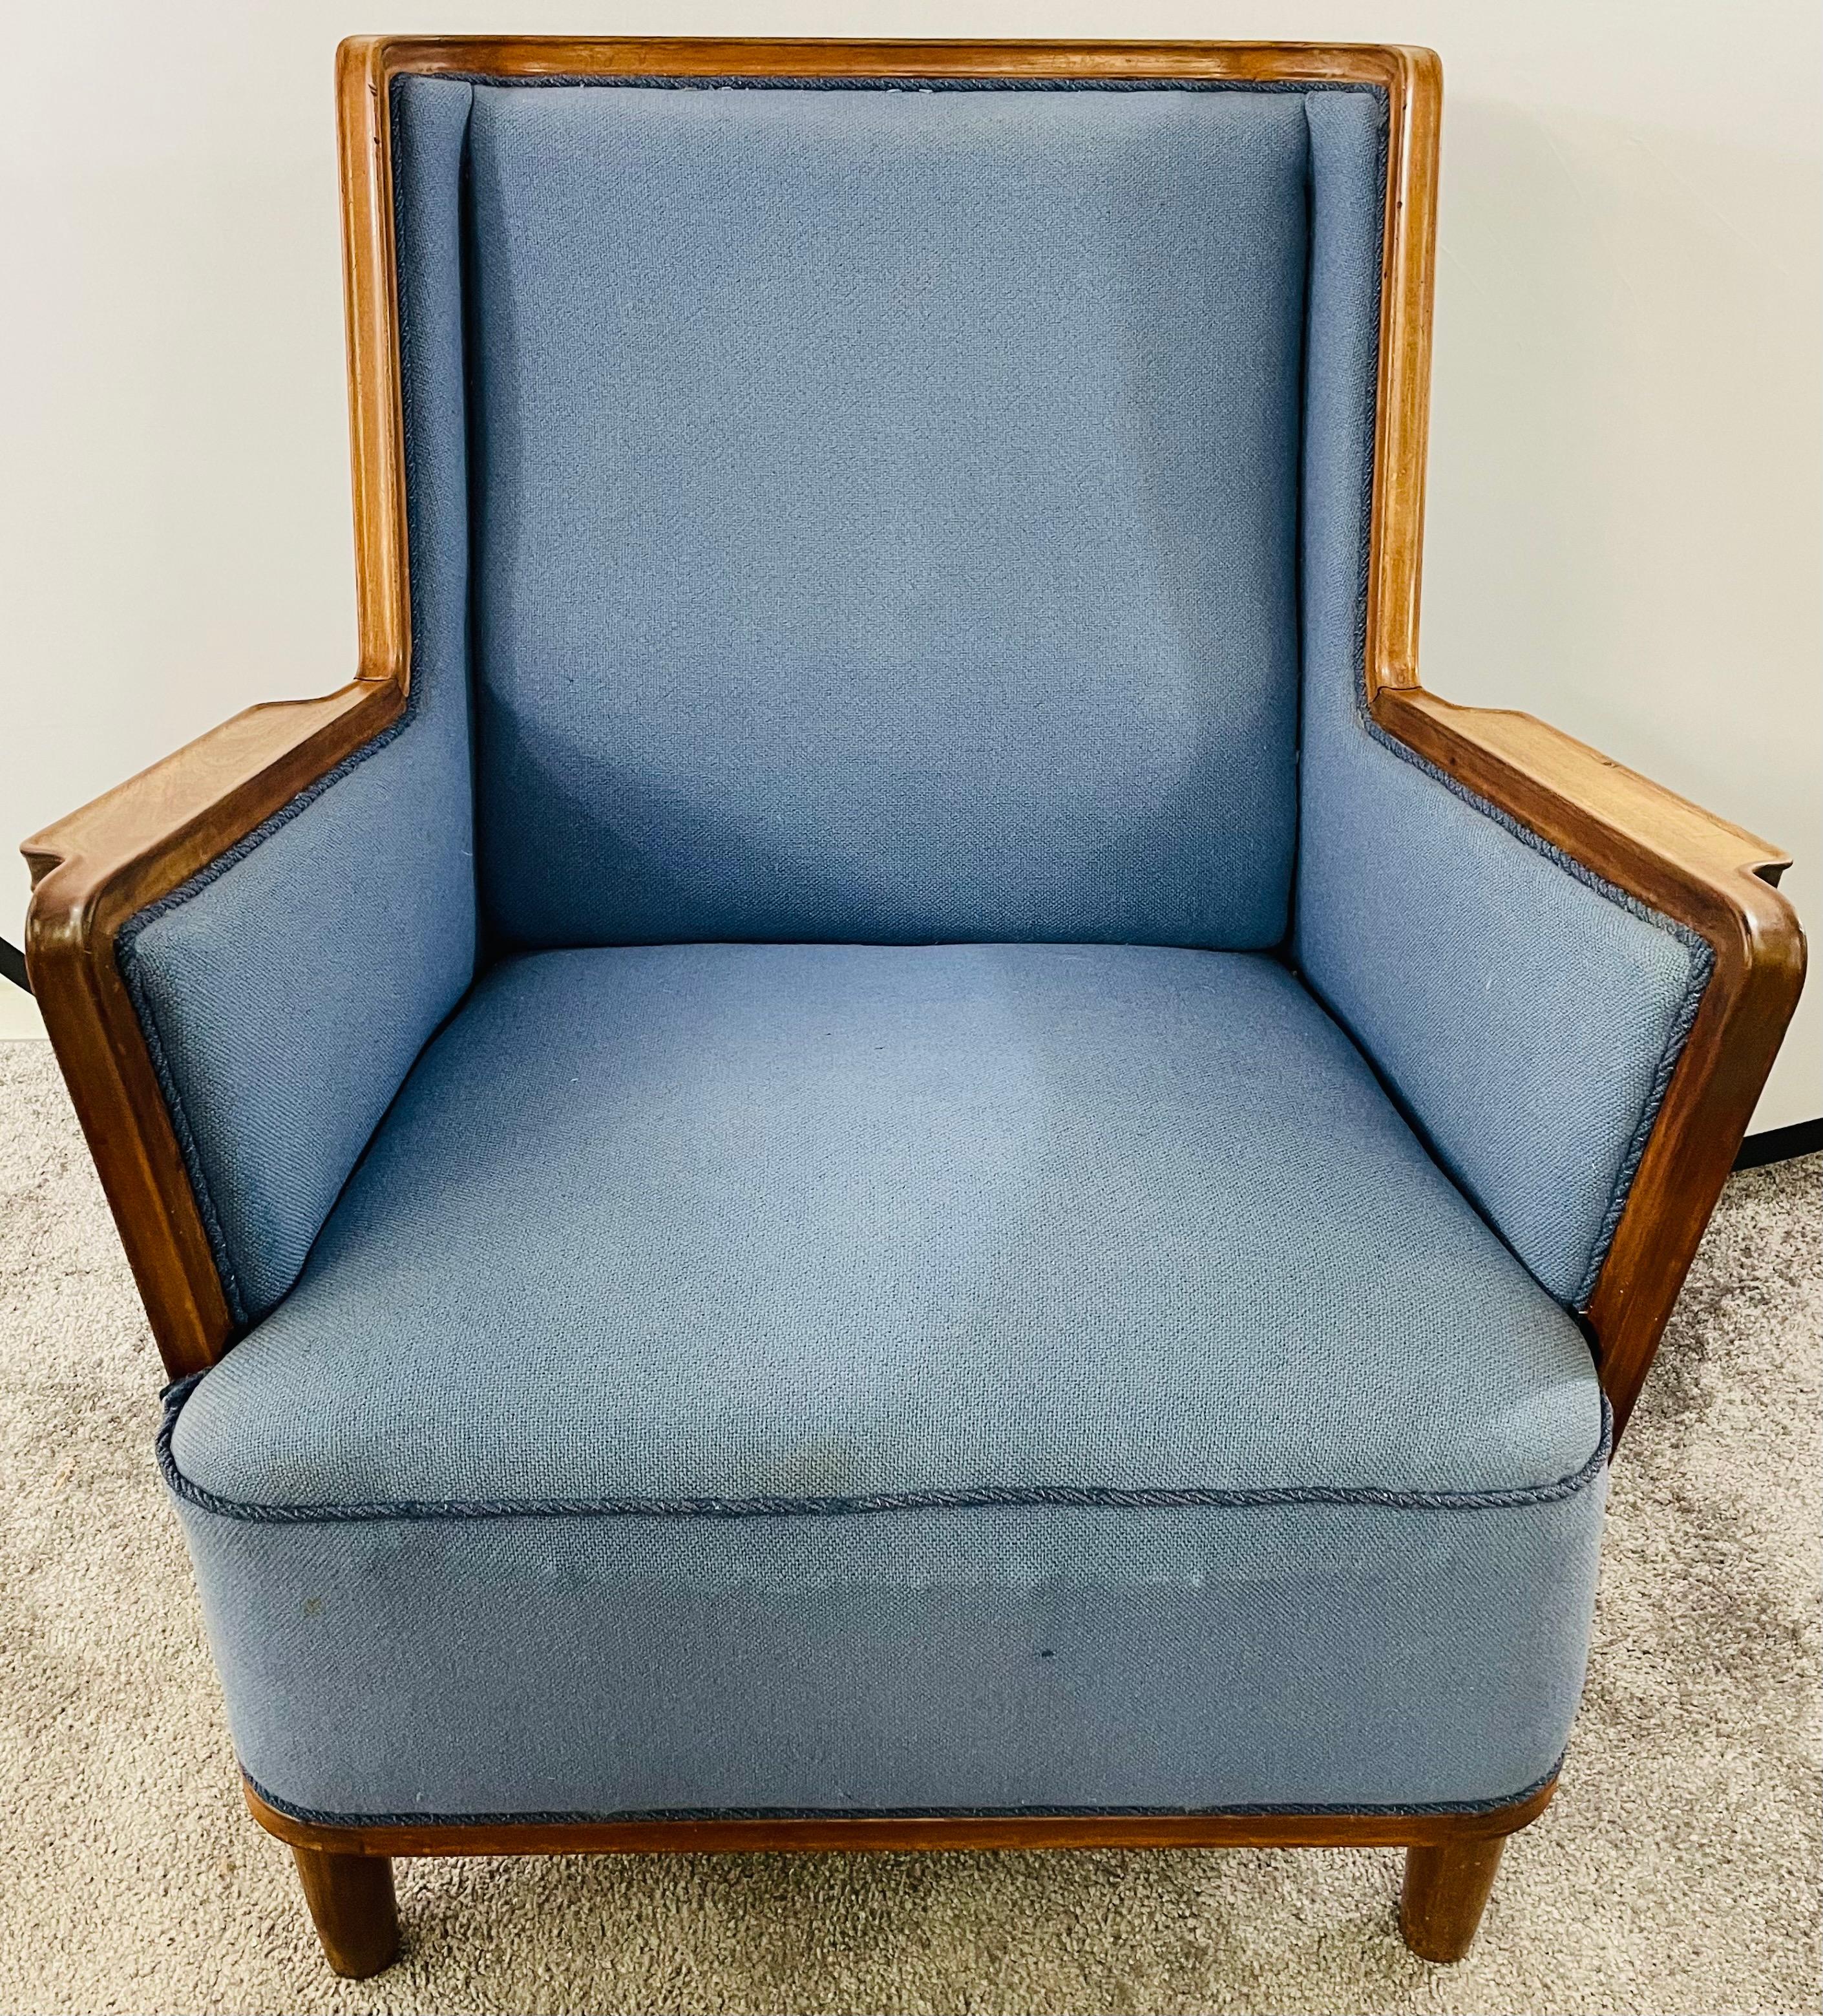 Finnish Mid-Century Modern Scandinavian Blue Upholstery Lounge Chair